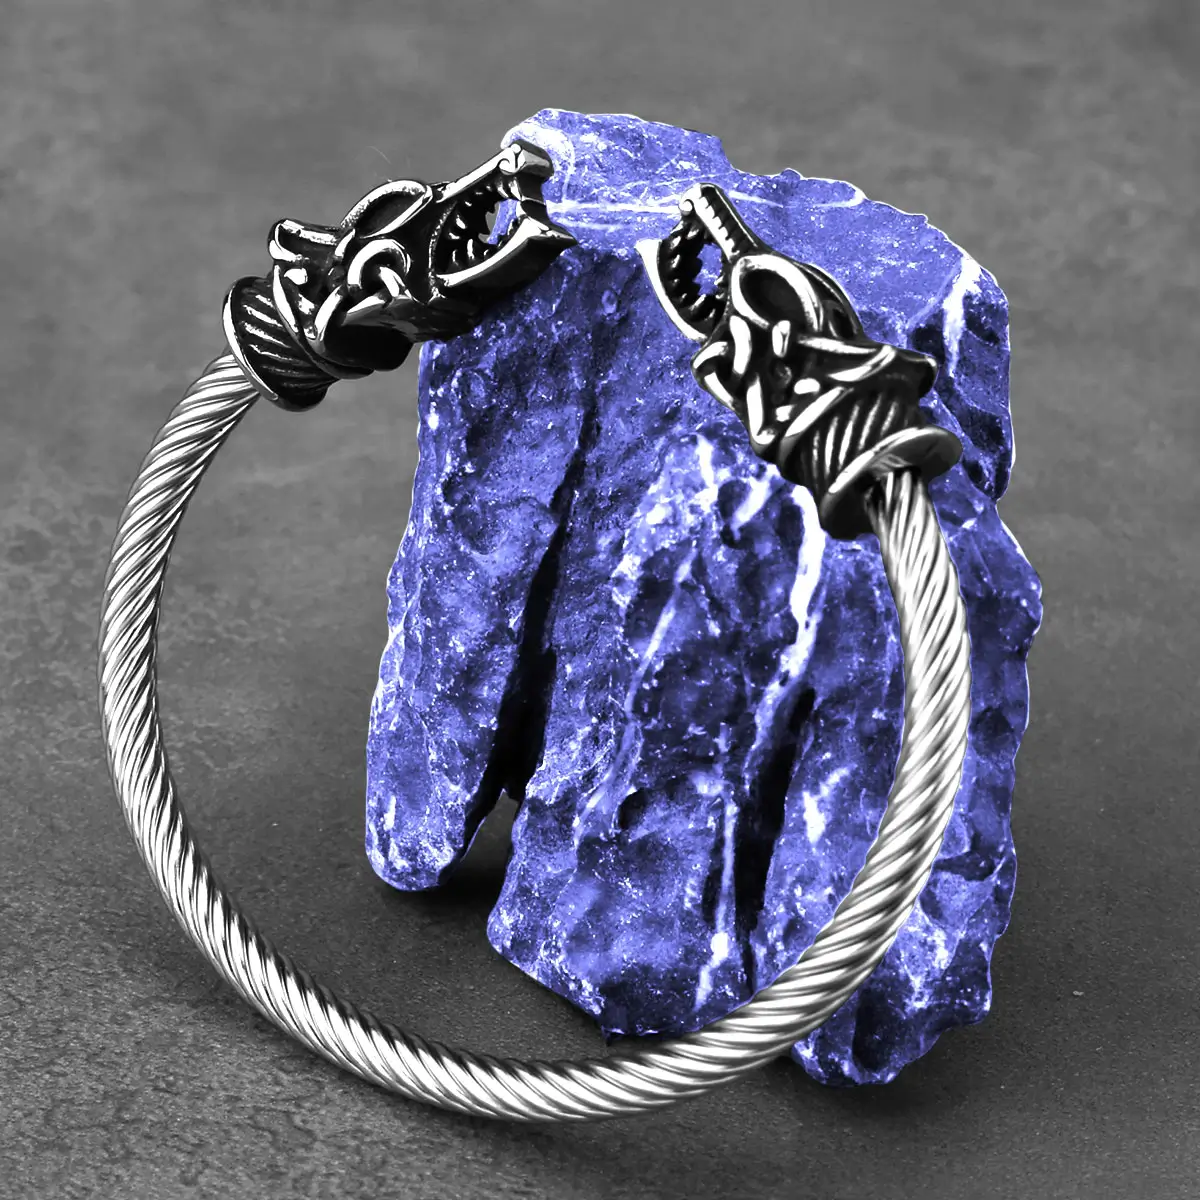 Bracelet viking tête de loup